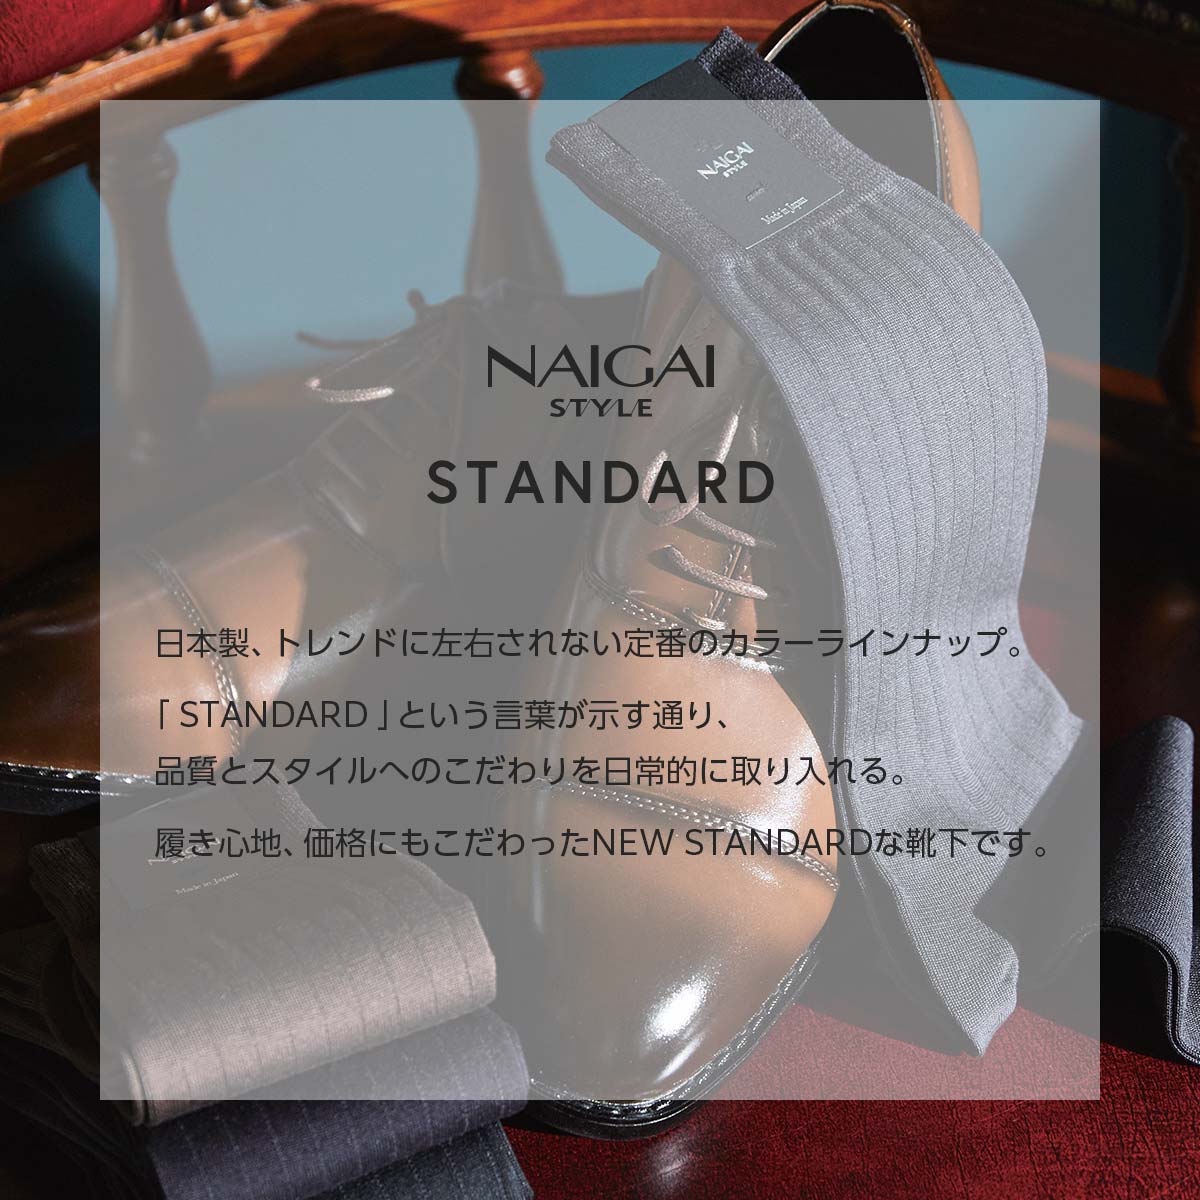 NAIGAI STYLE ナイガイ スタイル STANDARD 日本製 リブ ストライプ 3Dヒール 抗菌防臭 クルー丈 ビジネス ソックス